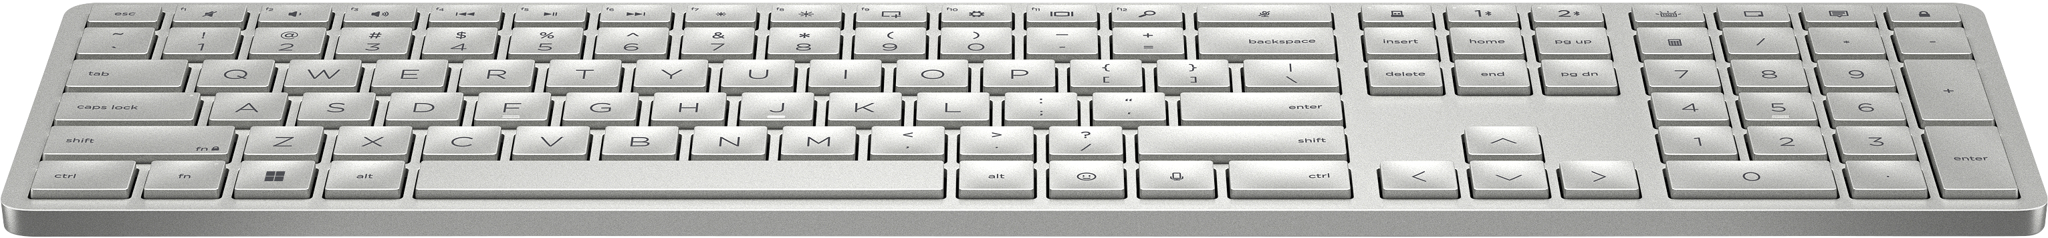 Bild von HP 970 Programmable Wireless K - Tastatur - Bluetooth